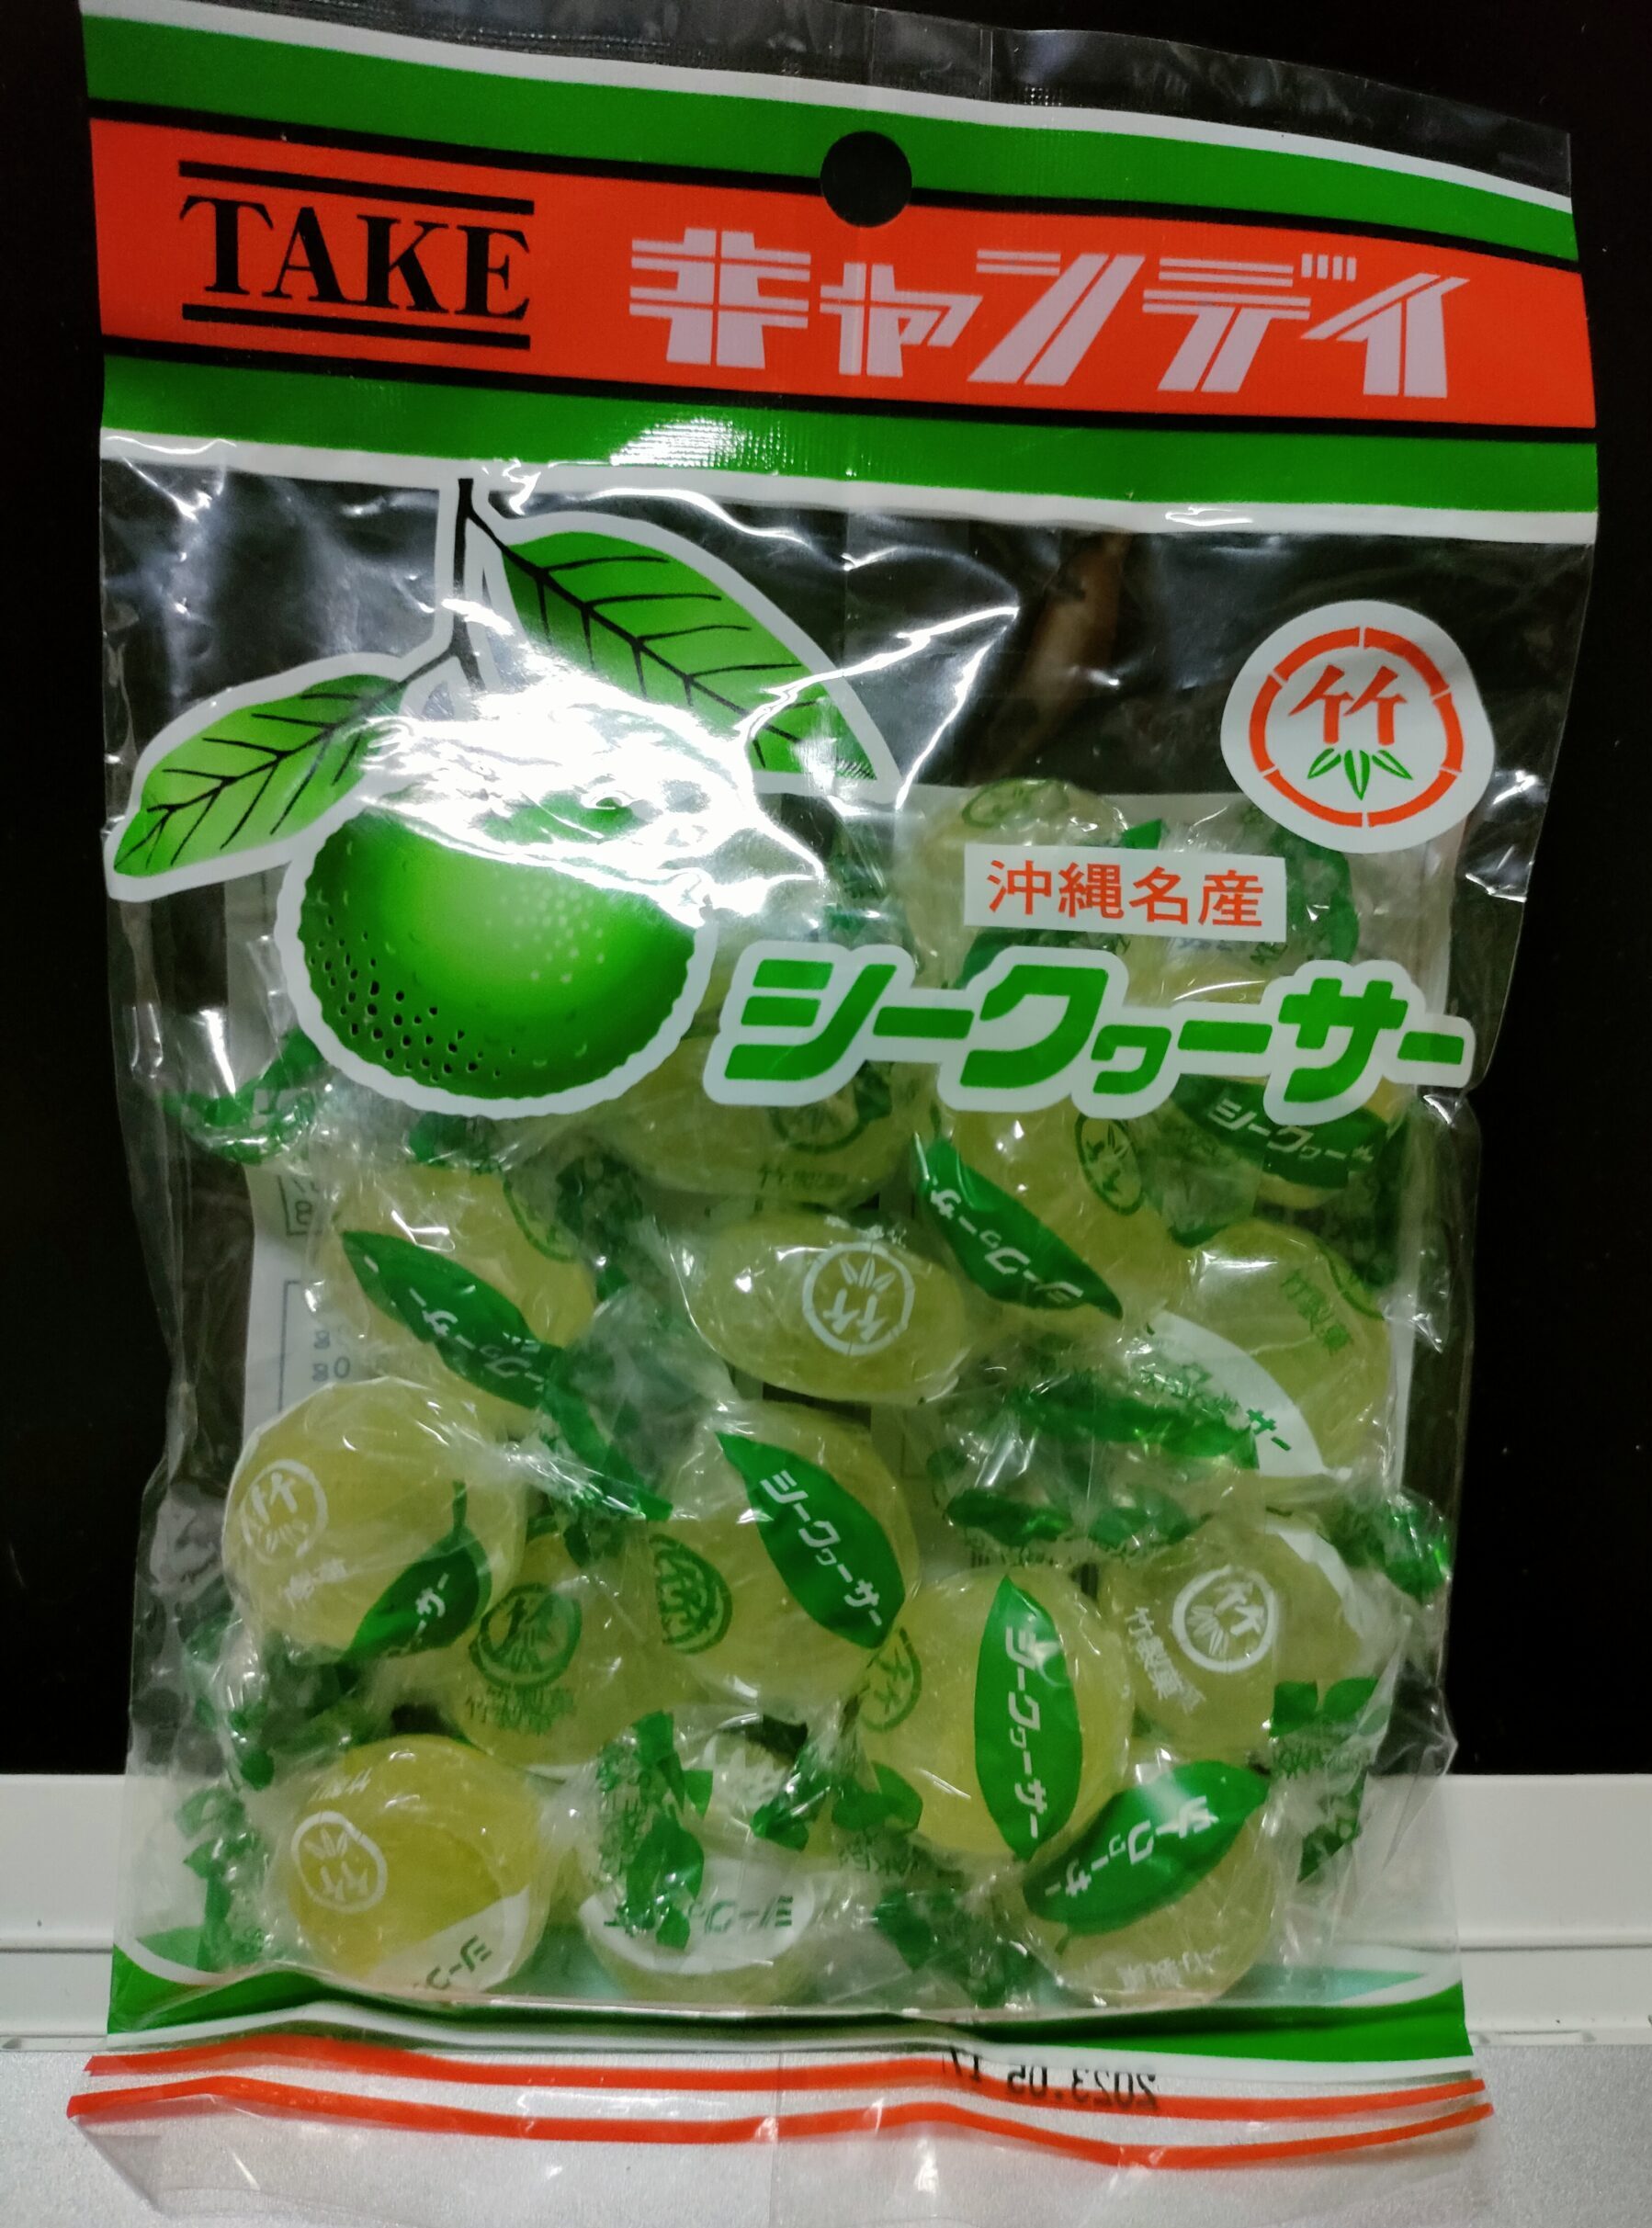 竹製菓の「沖縄県産シークヮーサー飴」